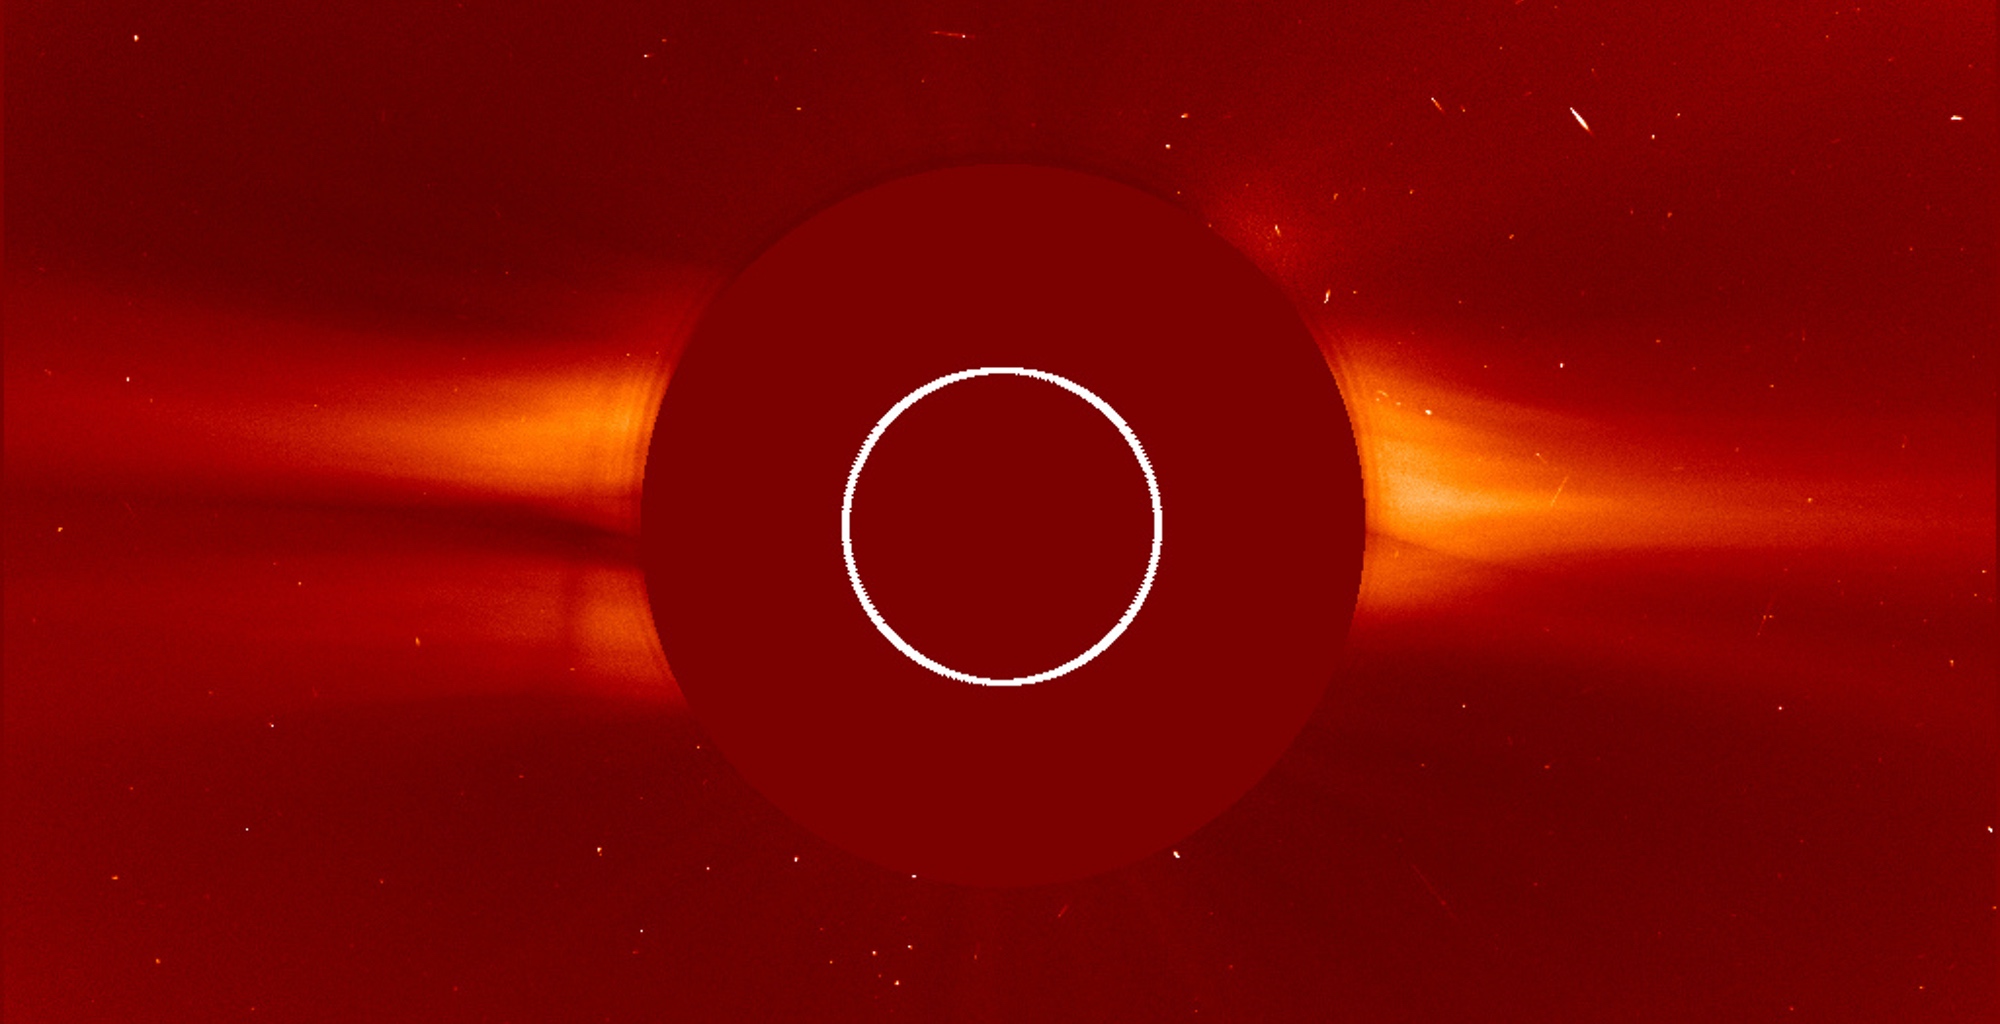 Le Soleil est au centre masqué par le coronographe Lasco C2 du satellite Soho. Image du 14 août 2020. On peut voir le vent solaire dépasser du disque. Le cercle blanc délimite la taille du Soleil. La Chine s'intéresse elle aussi à l'étude du Soleil, notamment dans l'idée d'en savoir plus sur la météo spatiale.&nbsp;© Nasa, ESA, Soho